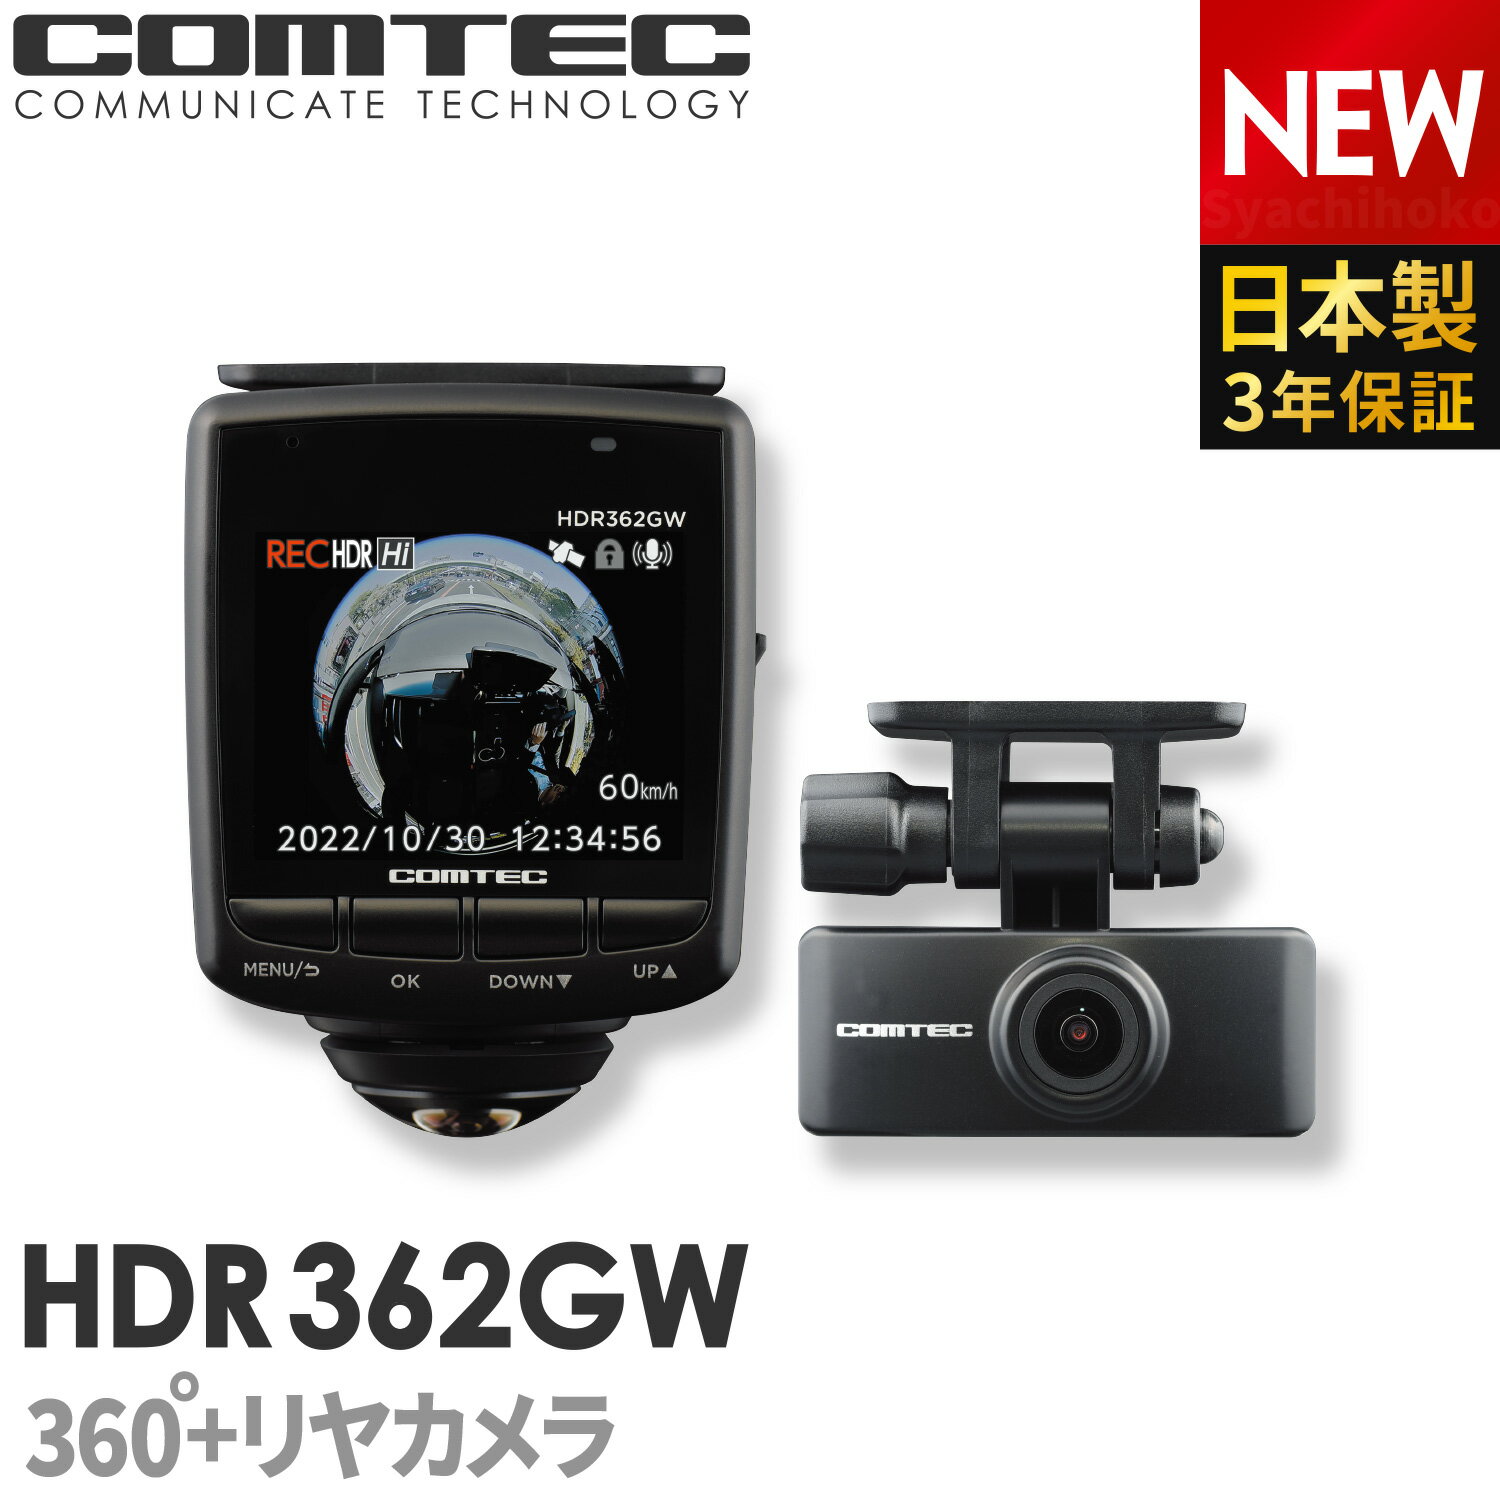 ドライブレコーダー 日本製 3年保証 360度 リヤカメラ コムテック HDR362GW 前後左右 全方位記録 前後2カメラ ノイズ対策済 常時 衝撃録画 GPS搭載 駐車監視対応 2.4インチ液晶 ドラレコ